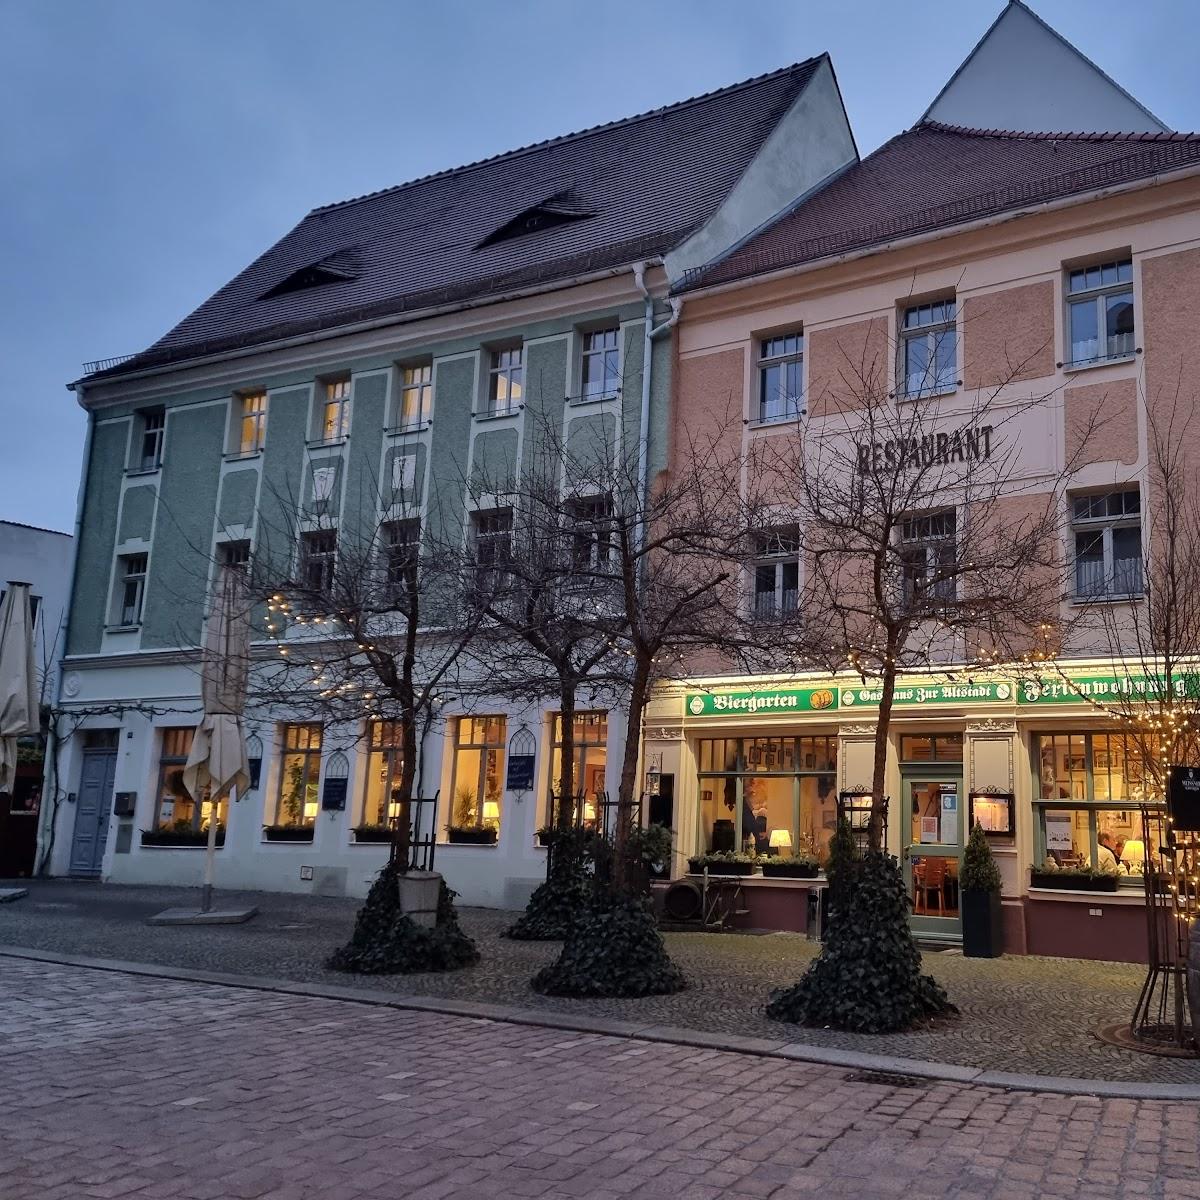 Restaurant "Gasthaus zur Altstadt" in Meißen